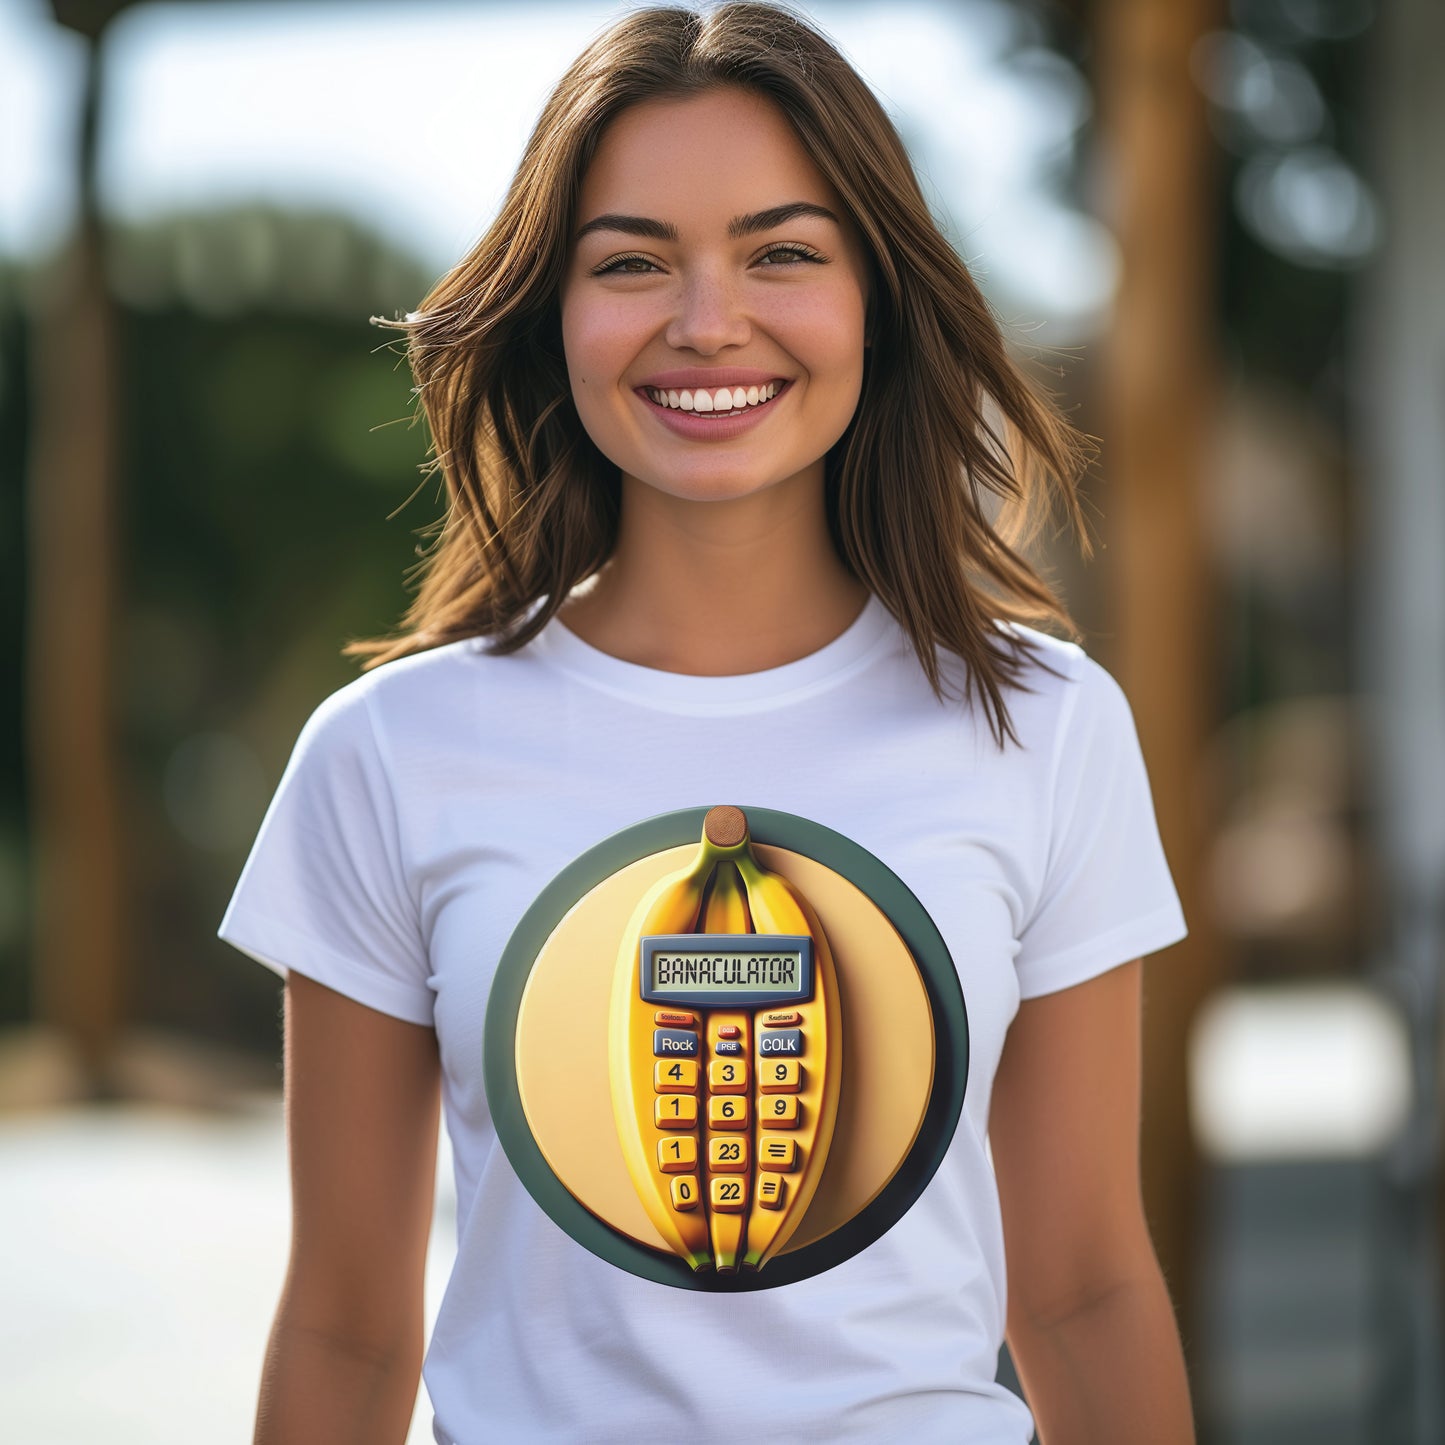 Banaculator: The Banana Calculator Concept T-Shirt, Funny Banana T-Shirt, Funny T-Shirt for Fruit Lovers, Funny Calculator T-Shirt, Funny Tee